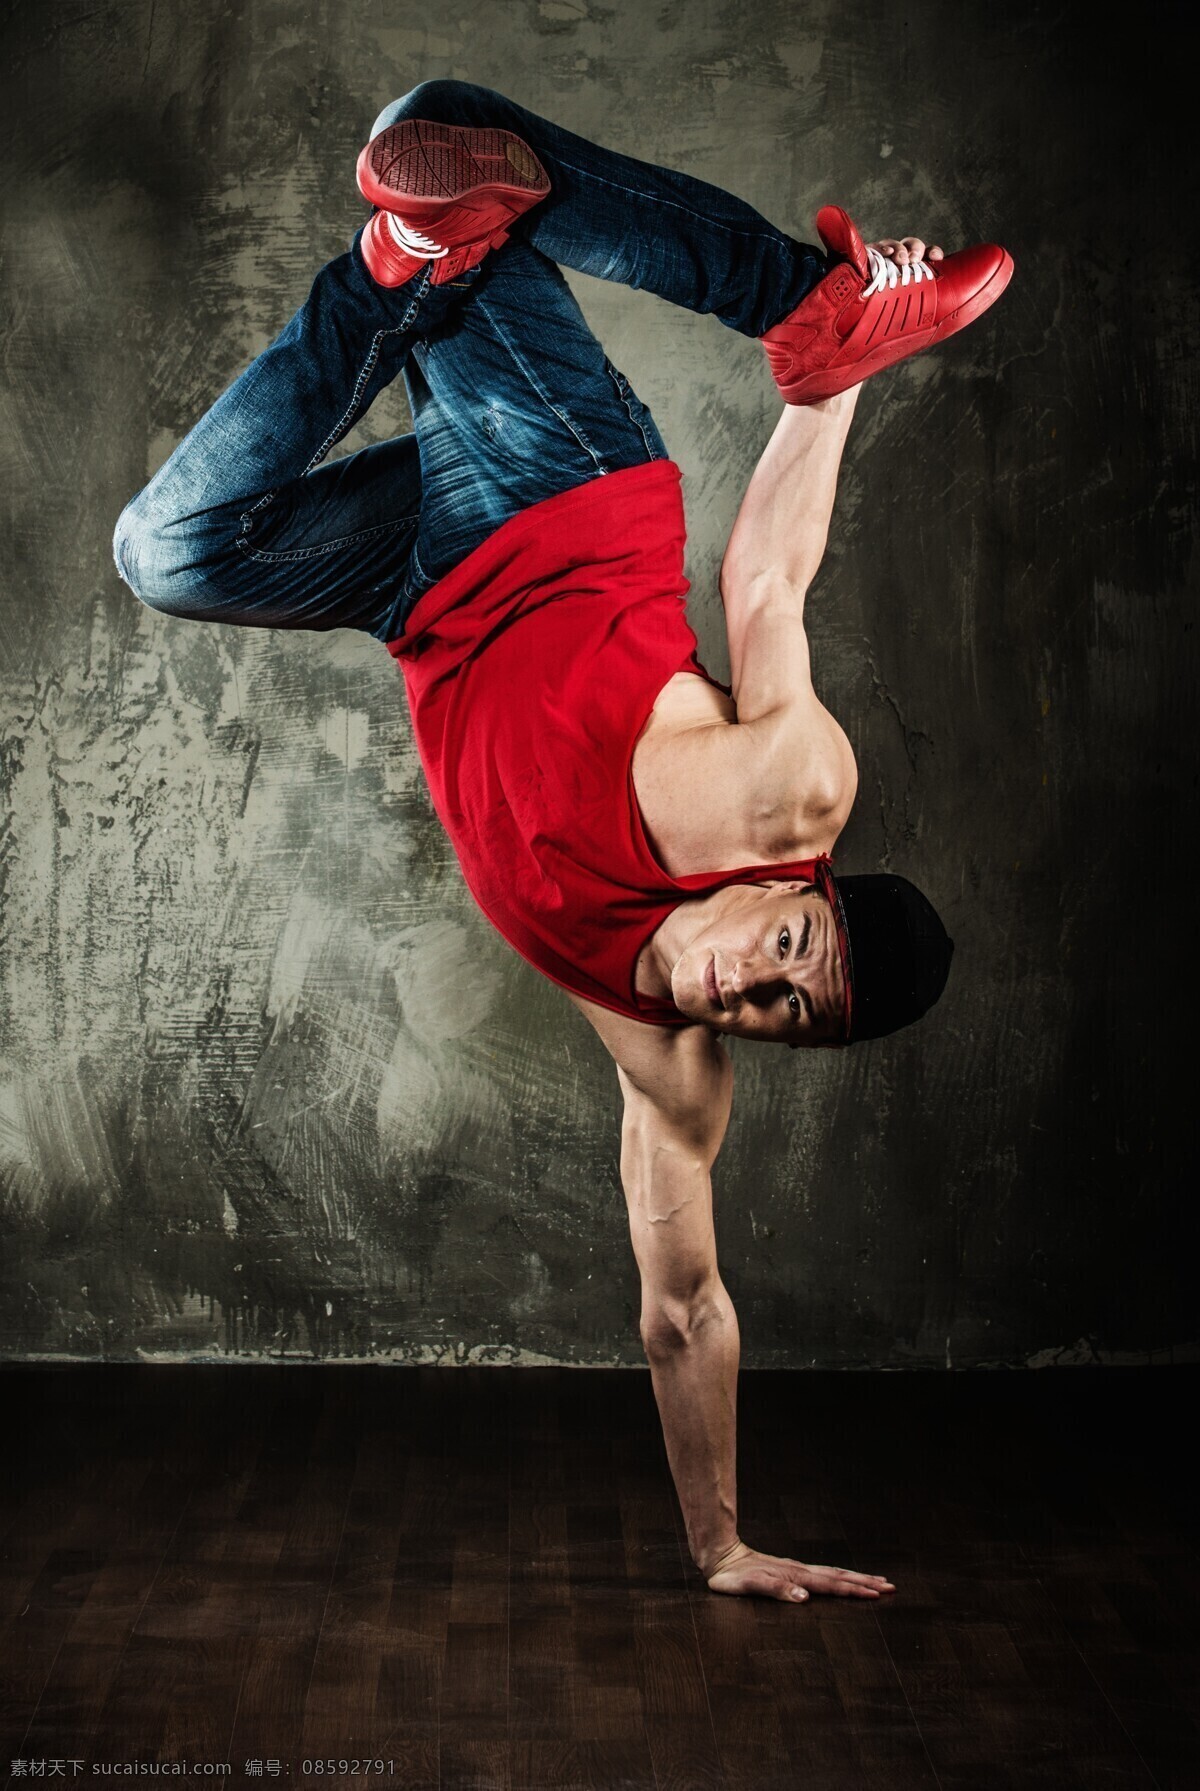 倒立 跳舞 男舞者 男人 舞者 舞蹈演员 舞蹈家 职业人物 生活人物 人物图片